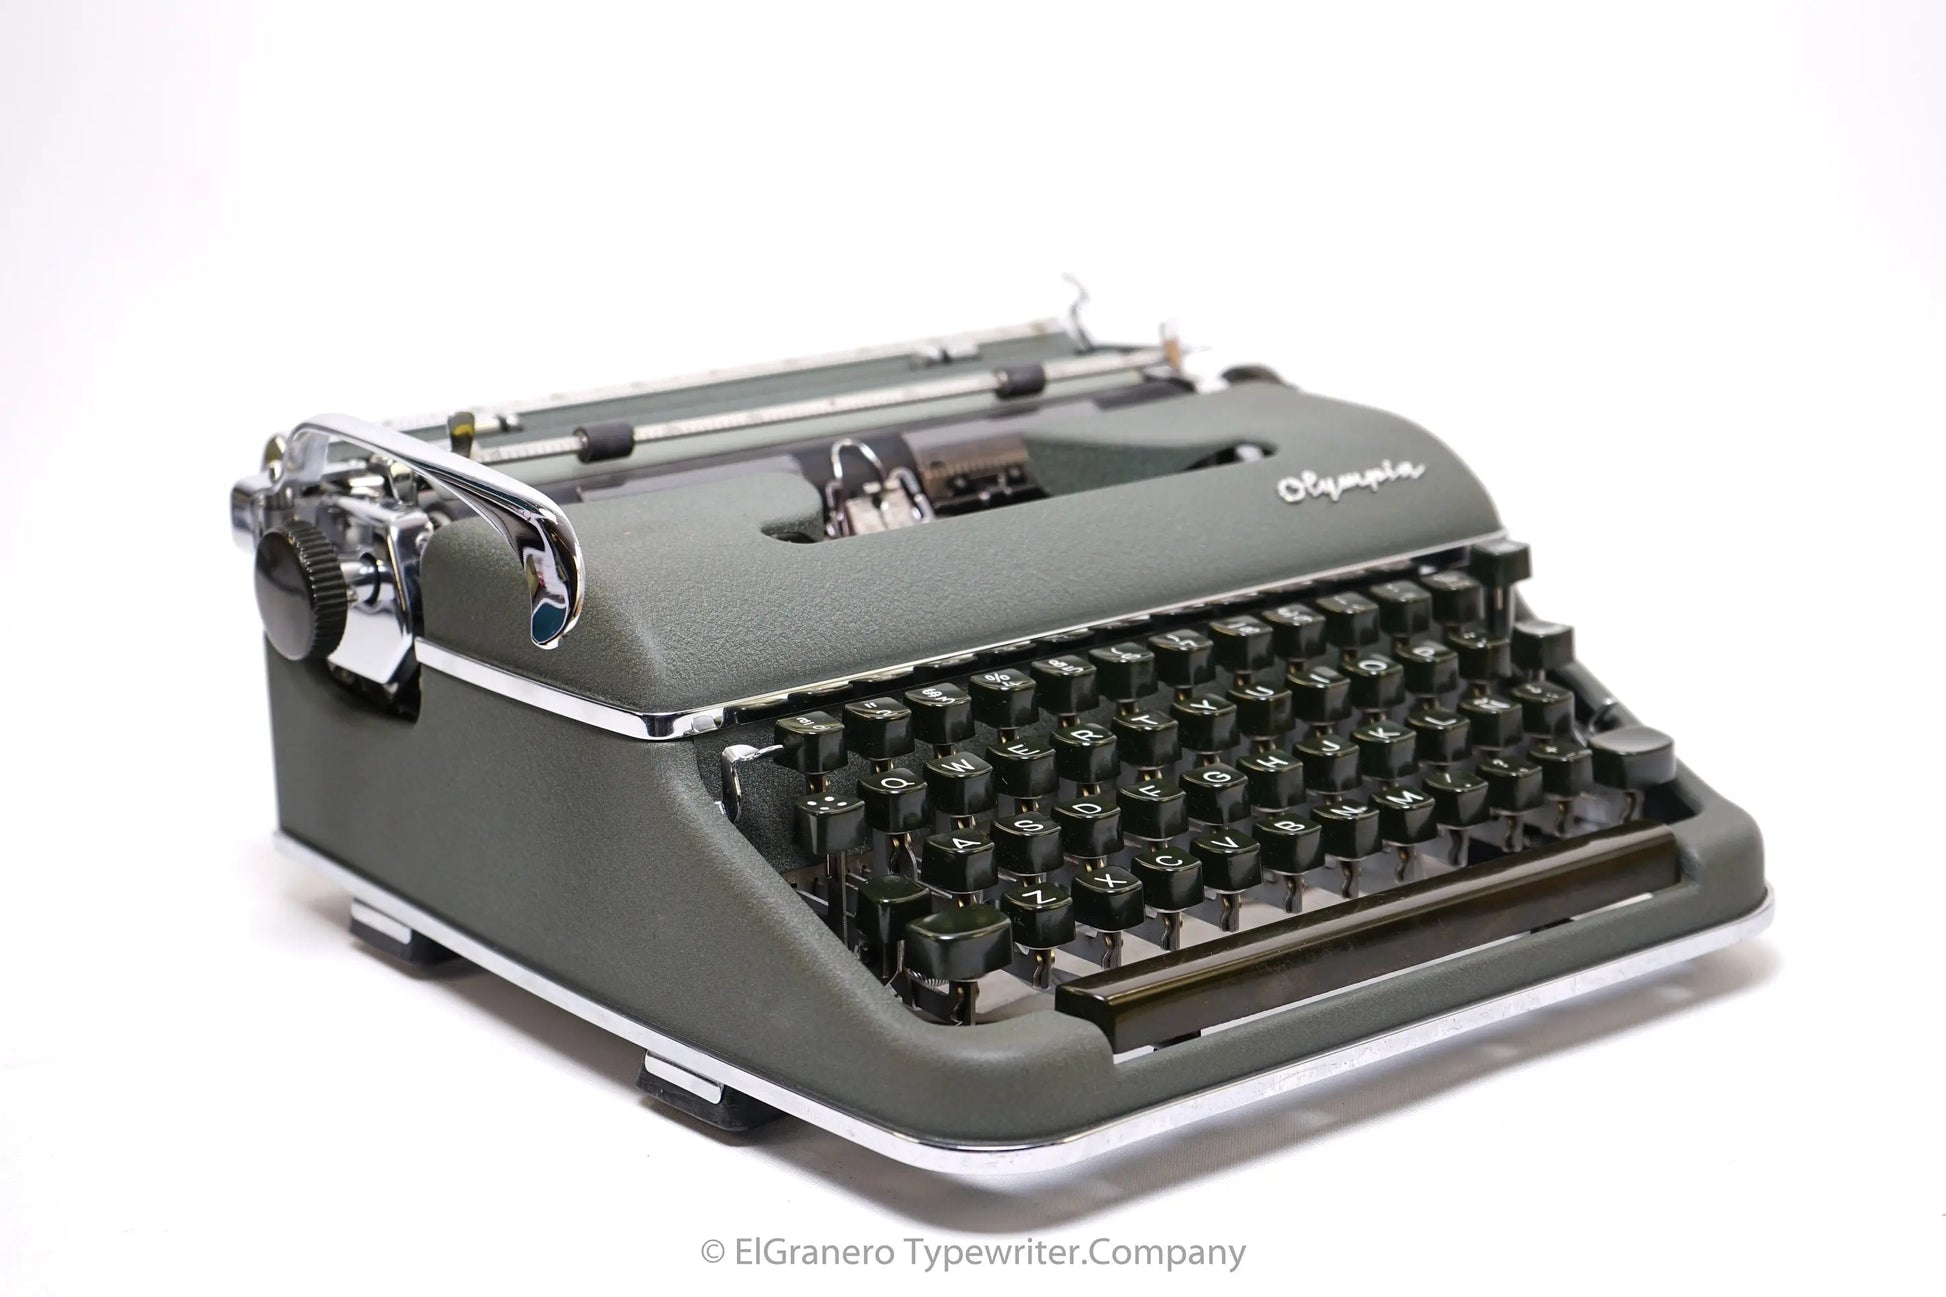 Olympia SM3 Manual Vintage Typewriter - ElGranero Typewriter.Company